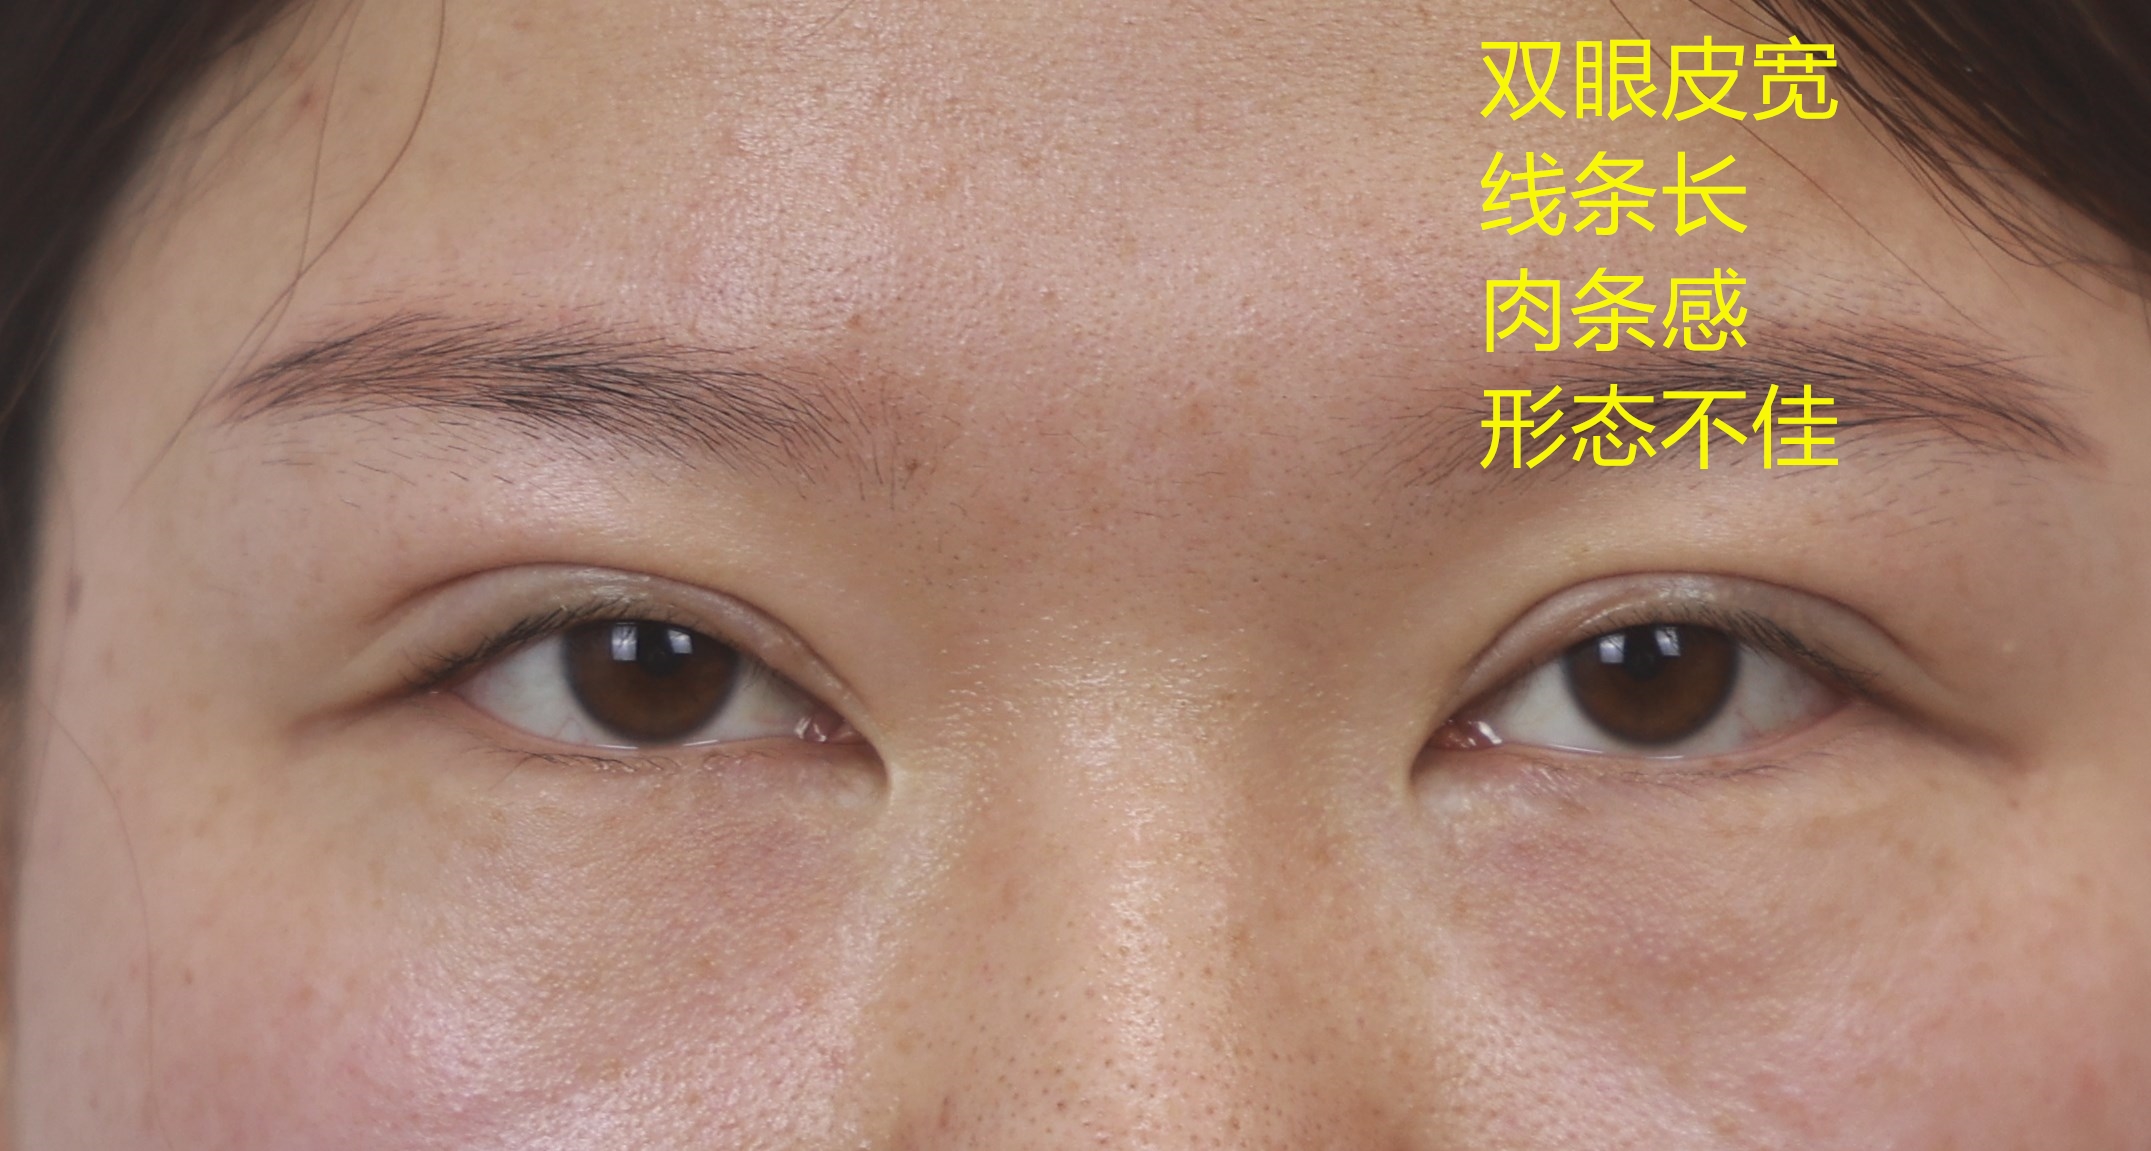 全切双眼皮修复第三次修复分析：双眼皮宽、假、凹陷性瘢痕明显。-孔宇主任医师-爱问医生